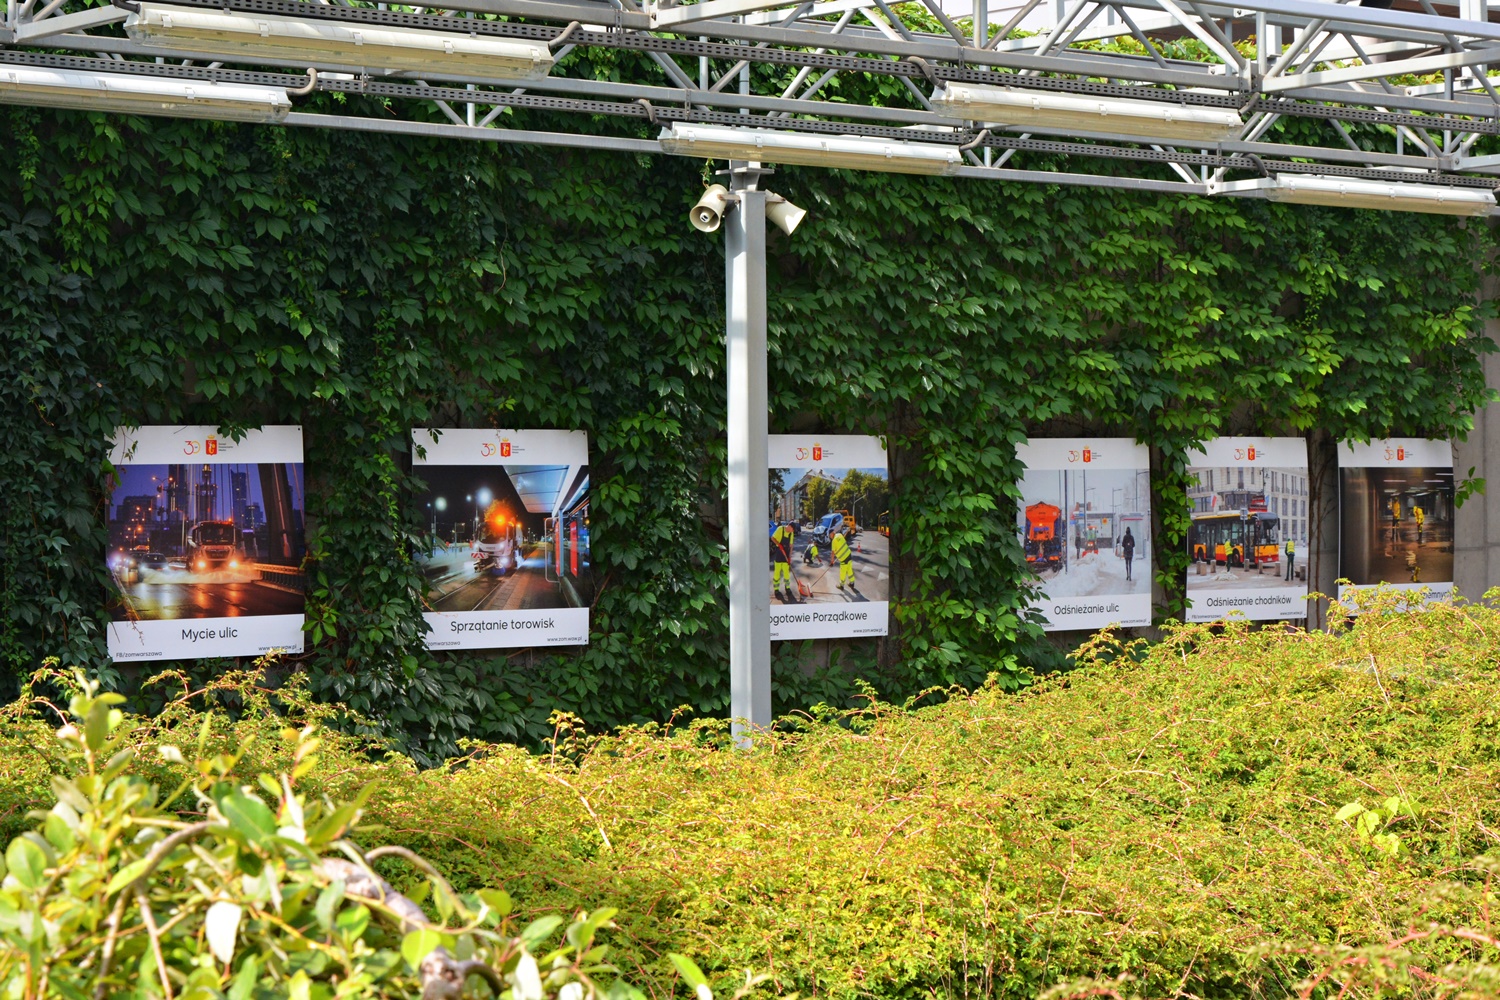 Zdjęcia z prac porządkowych Zarządu Oczyszczania Miasta w galerii plenerowej, zaprezentowane na ścianie porośniętej wijącą rośliną